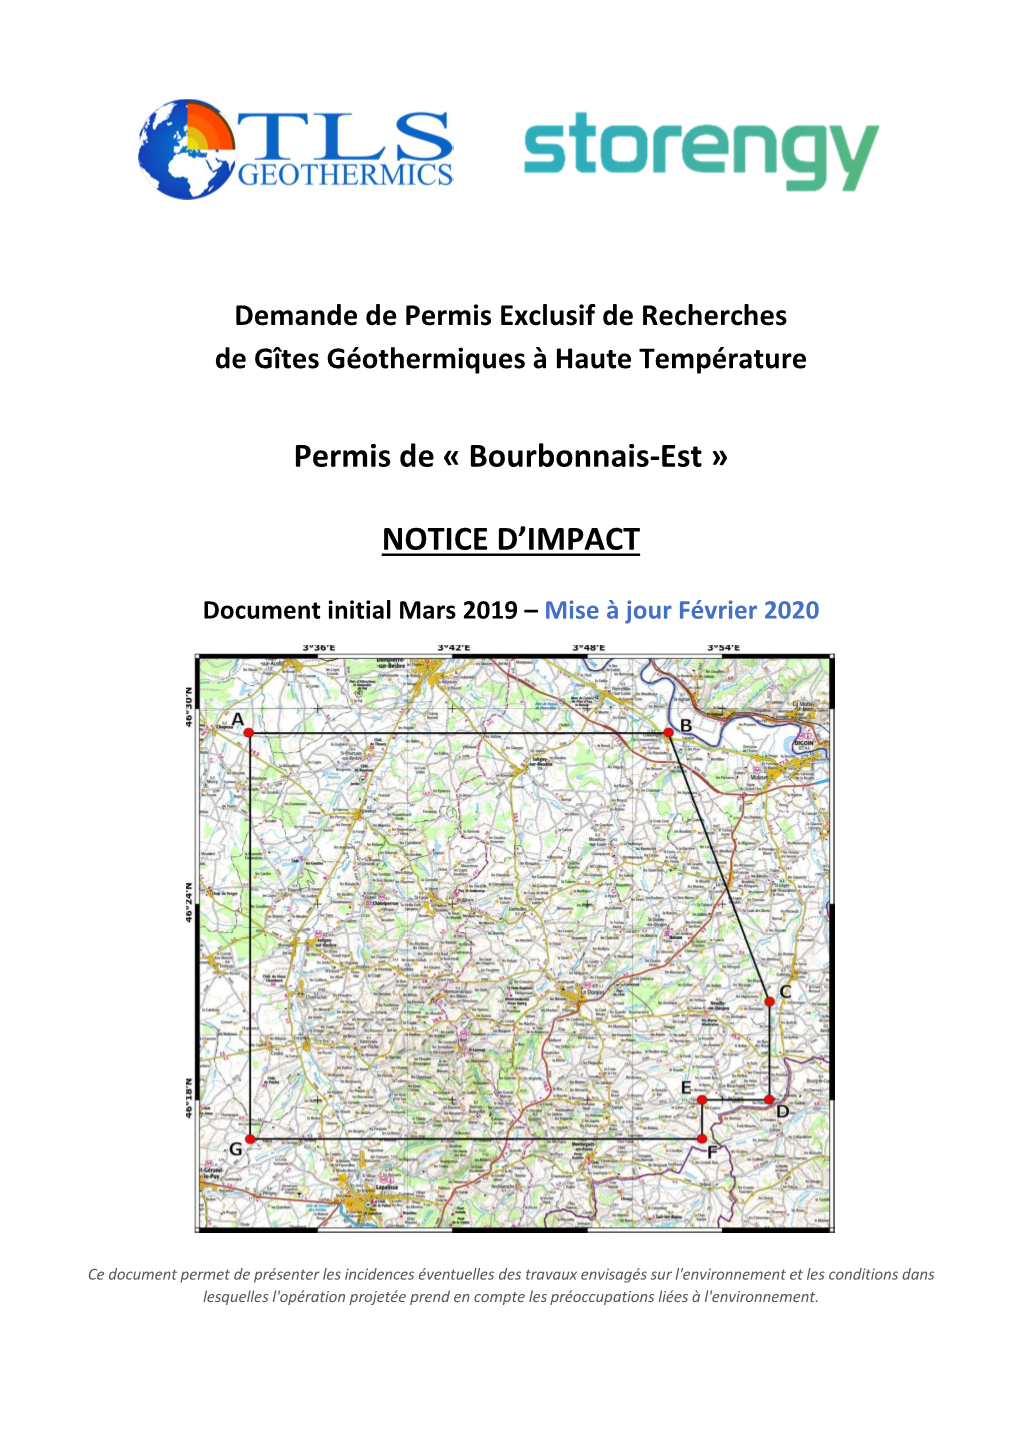 2.Bourbonnais-Est 2020